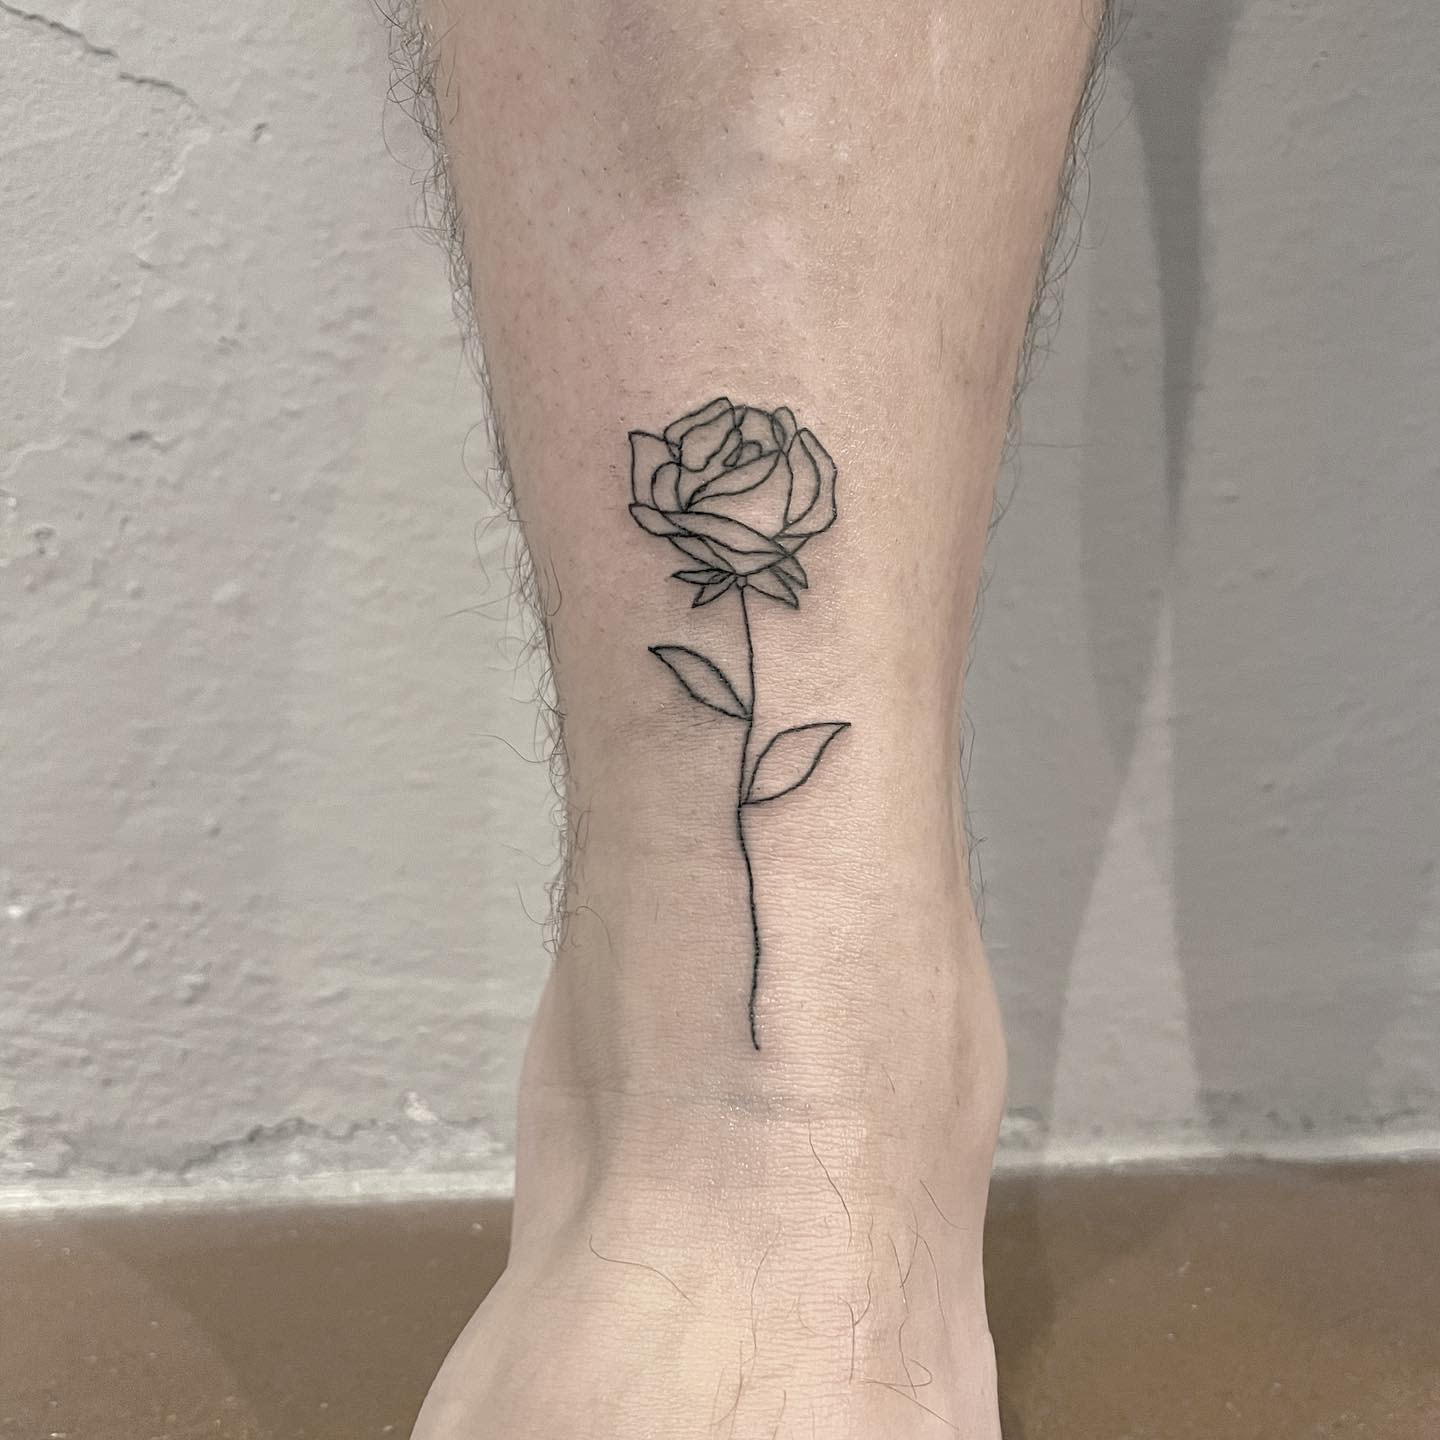 Minimalist one line rose tattoo on the inner arm